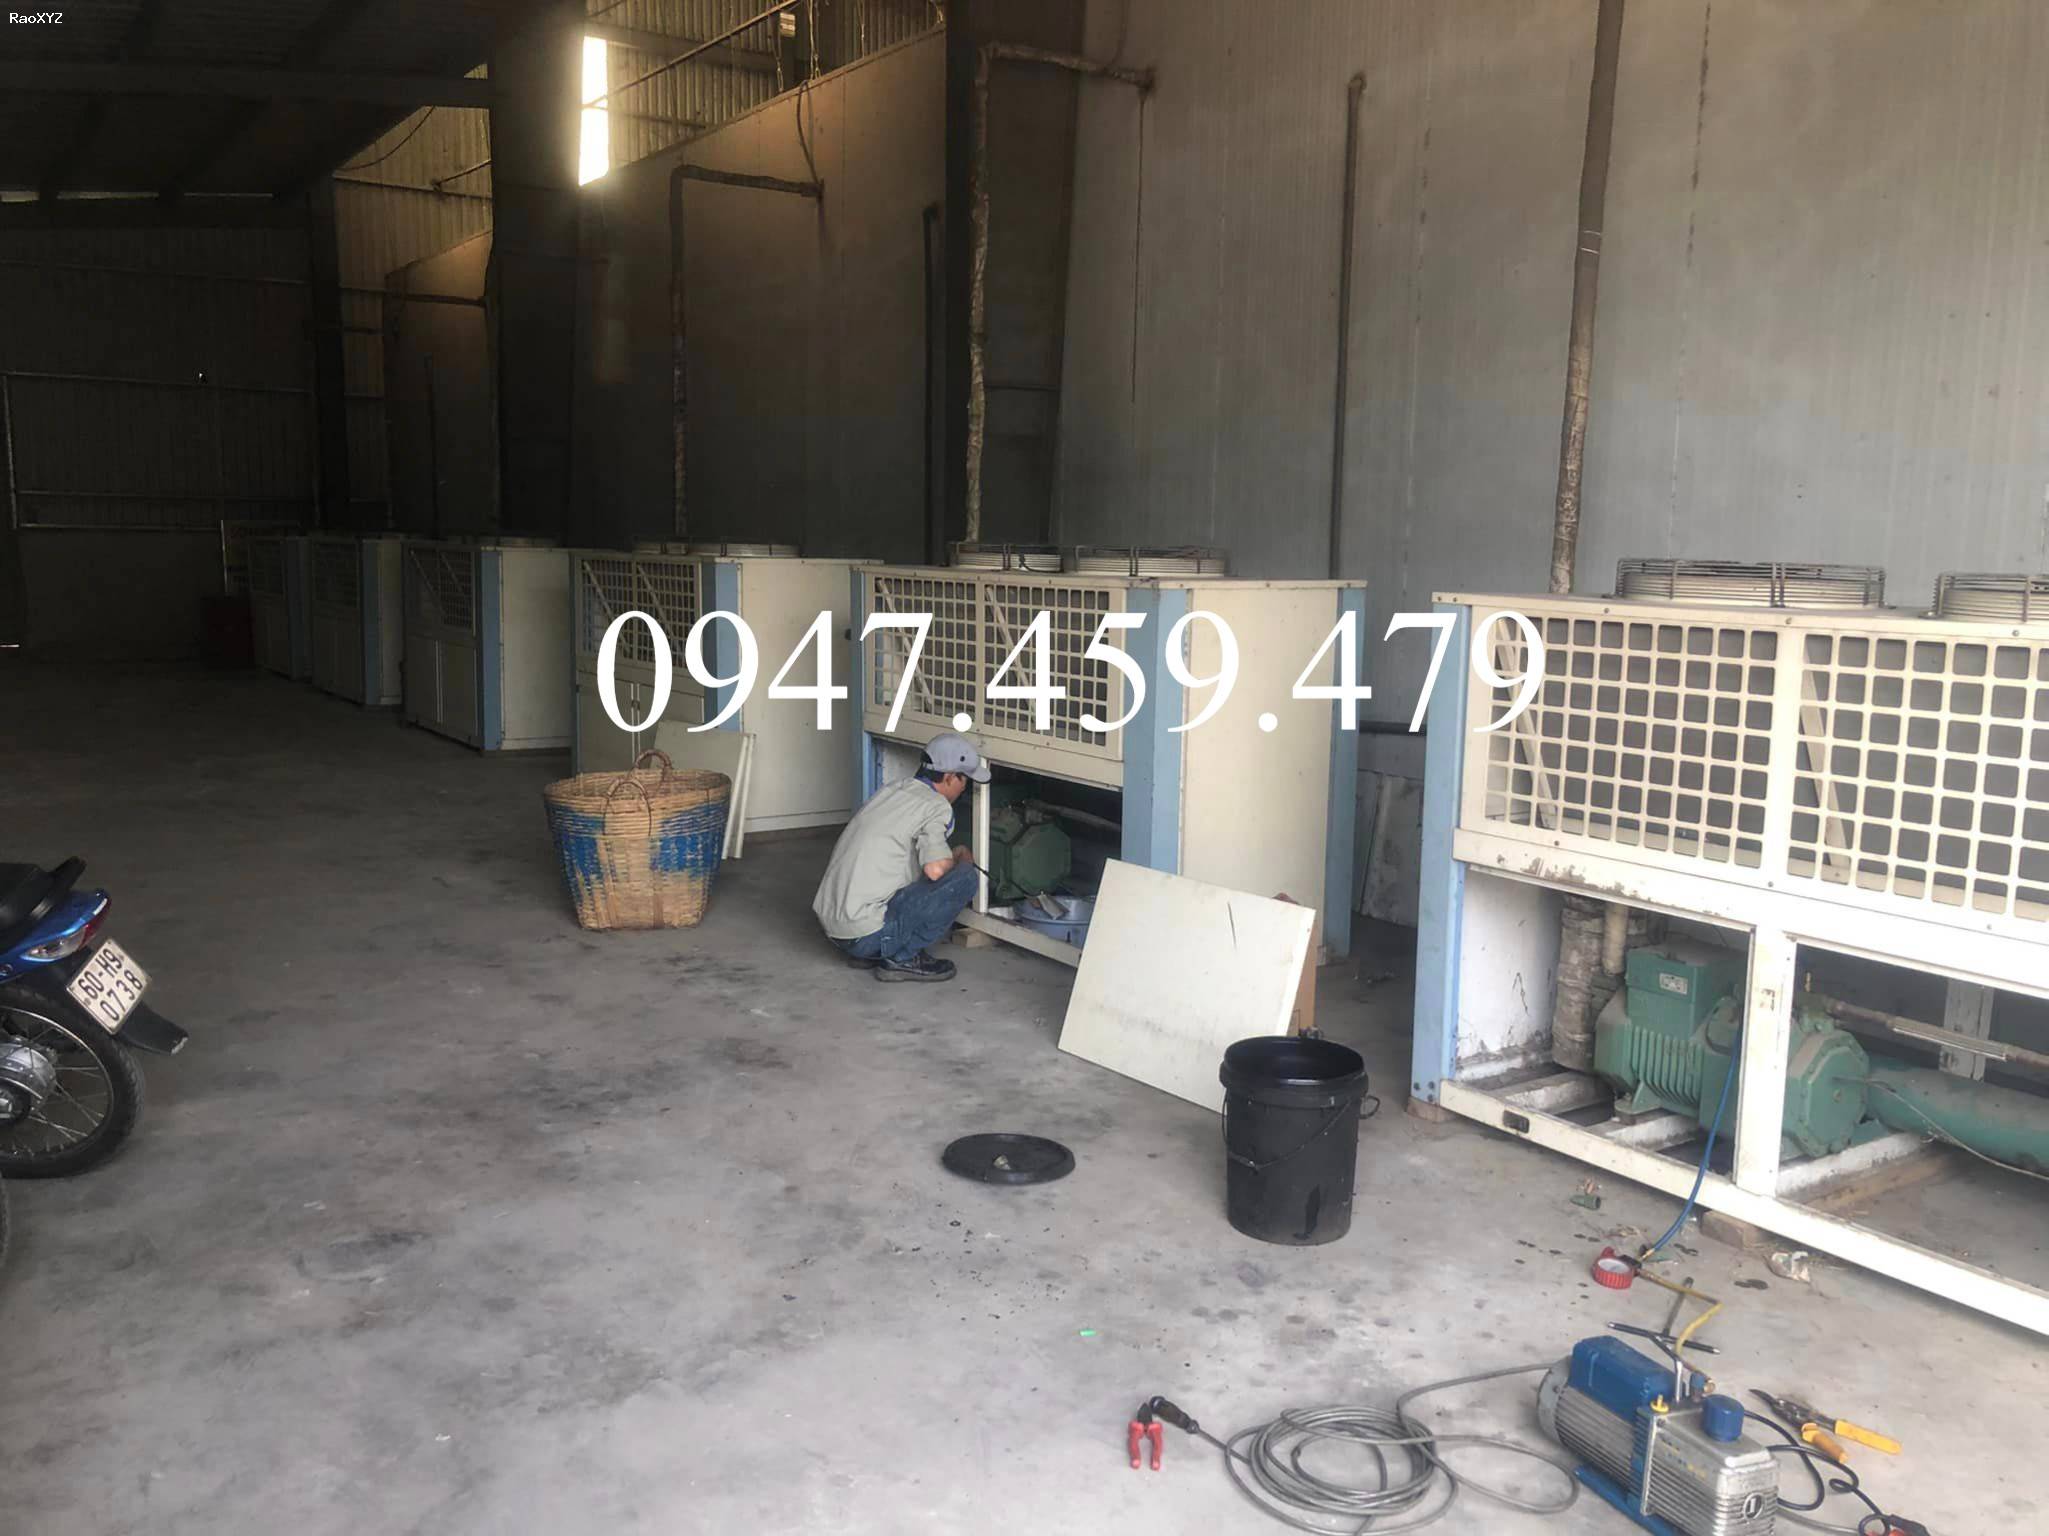 Sửa chữa máy làm lạnh nước tại quận tân phú, 0947.459.479, làm lạnh nước